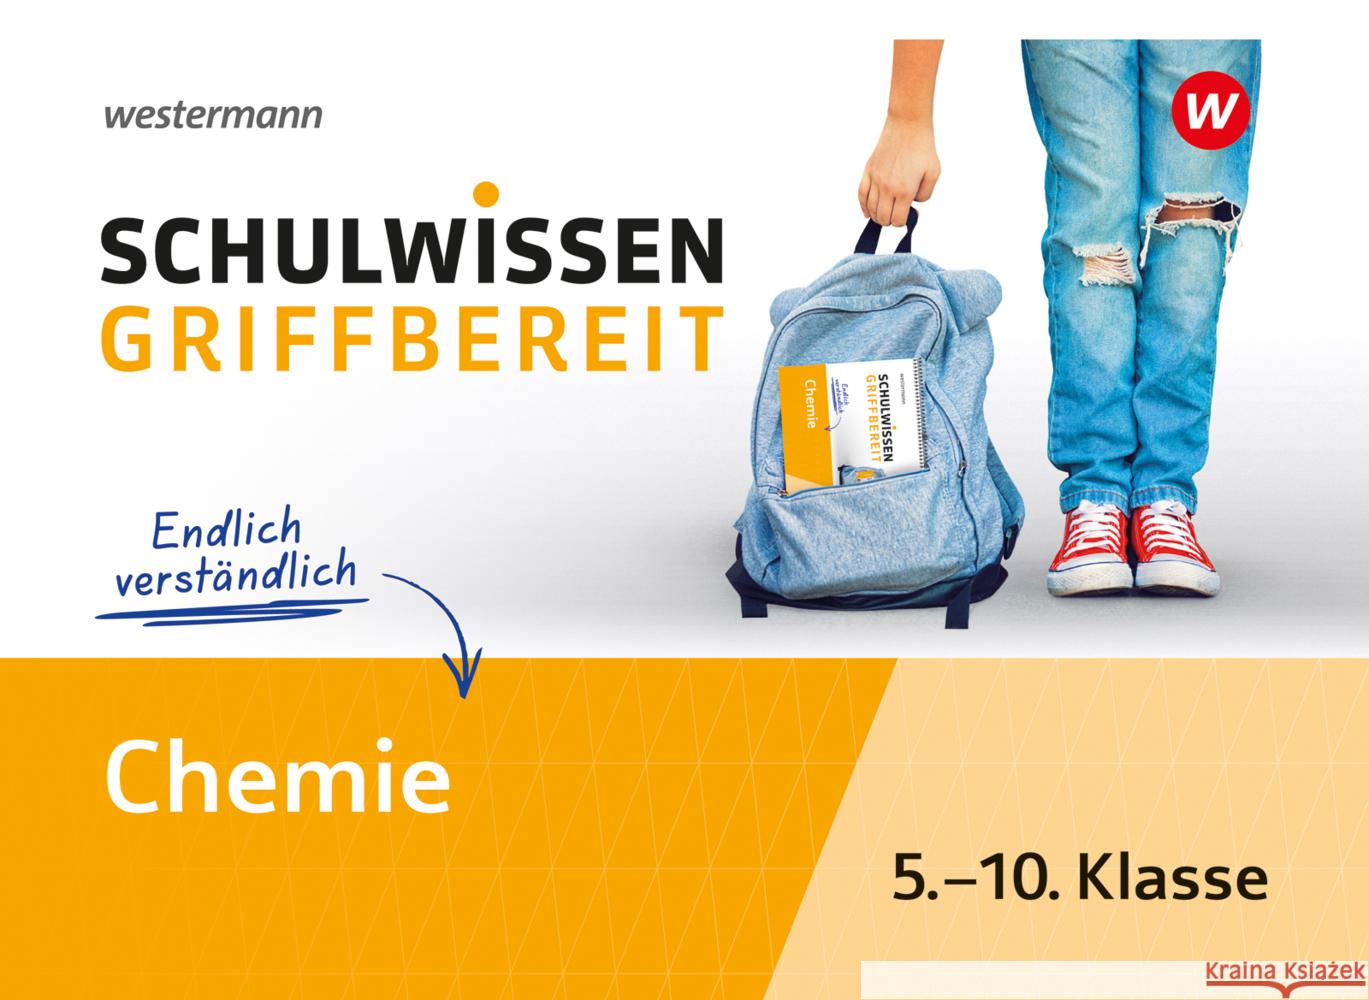 Schulwissen griffbereit Schneider, Iris 9783070030191 Westermann Lernwelten - książka